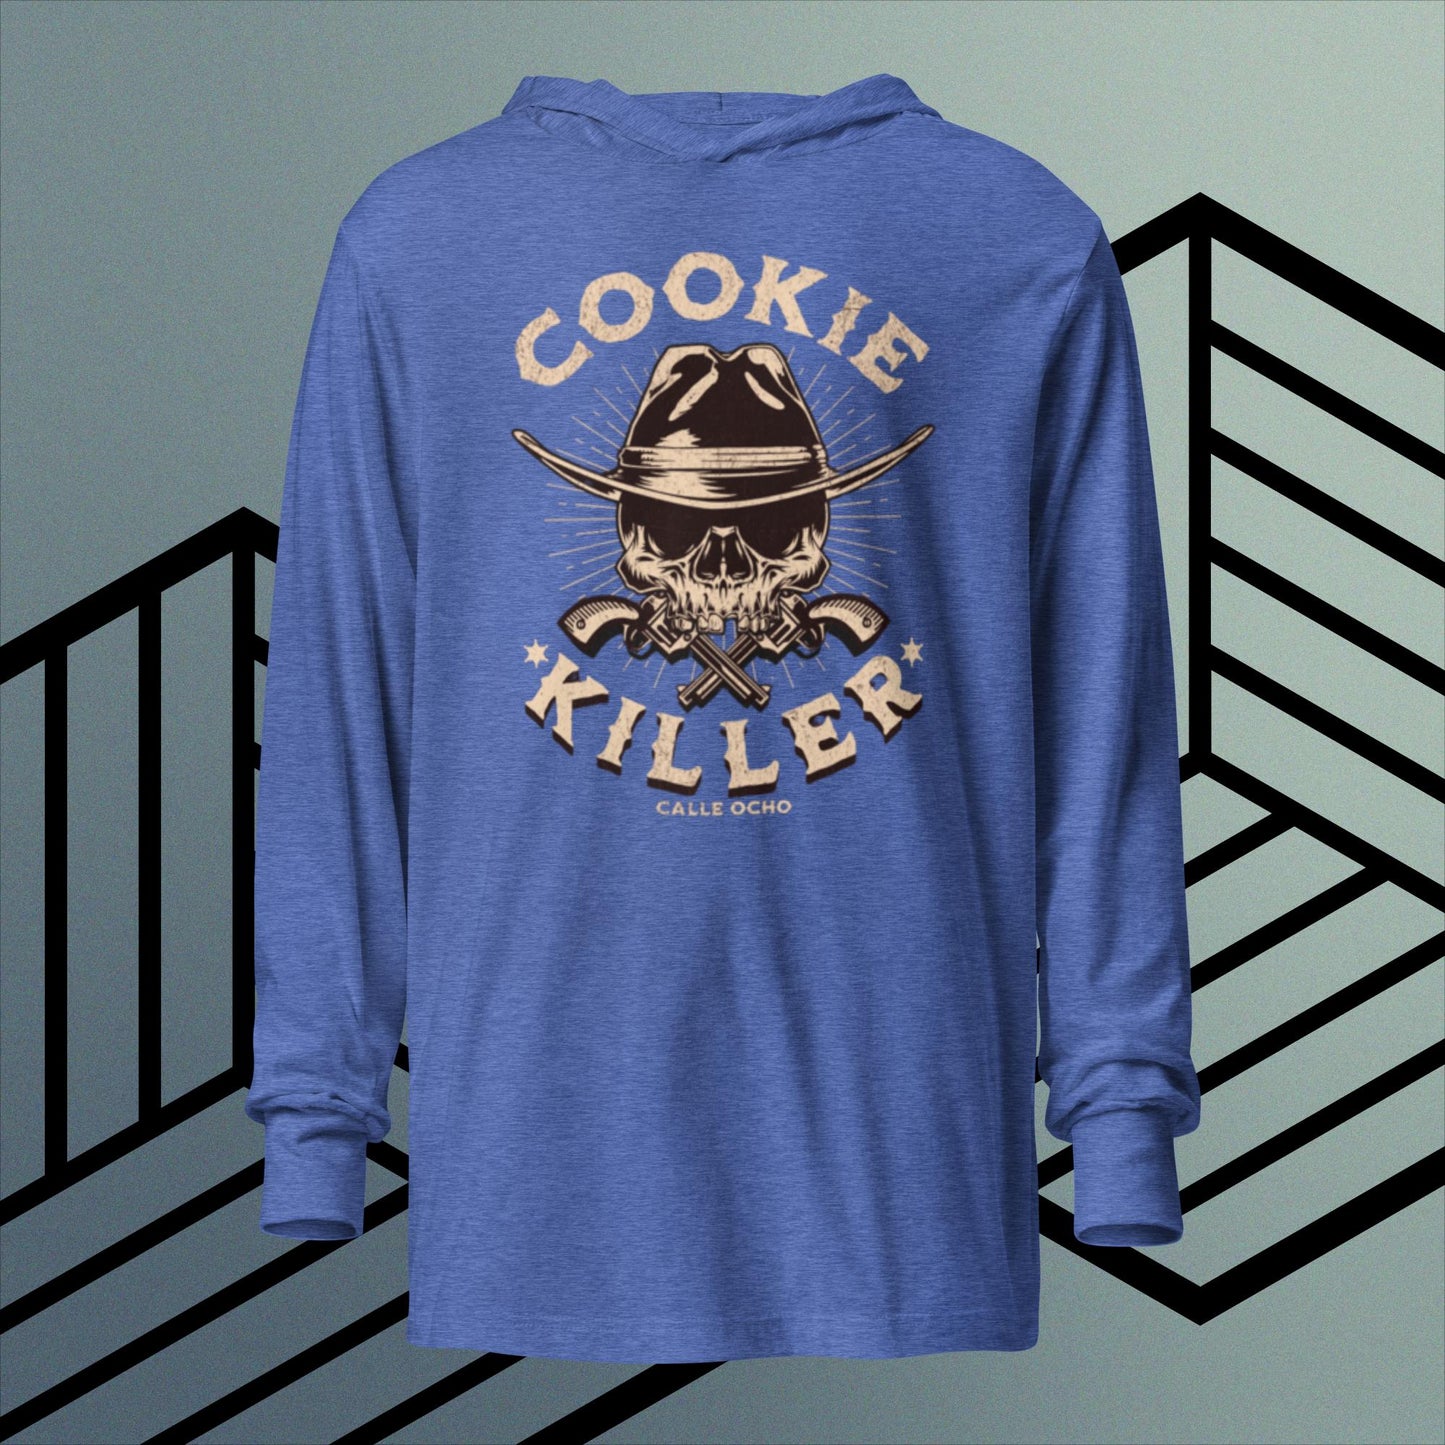 Cookie killer hooded T